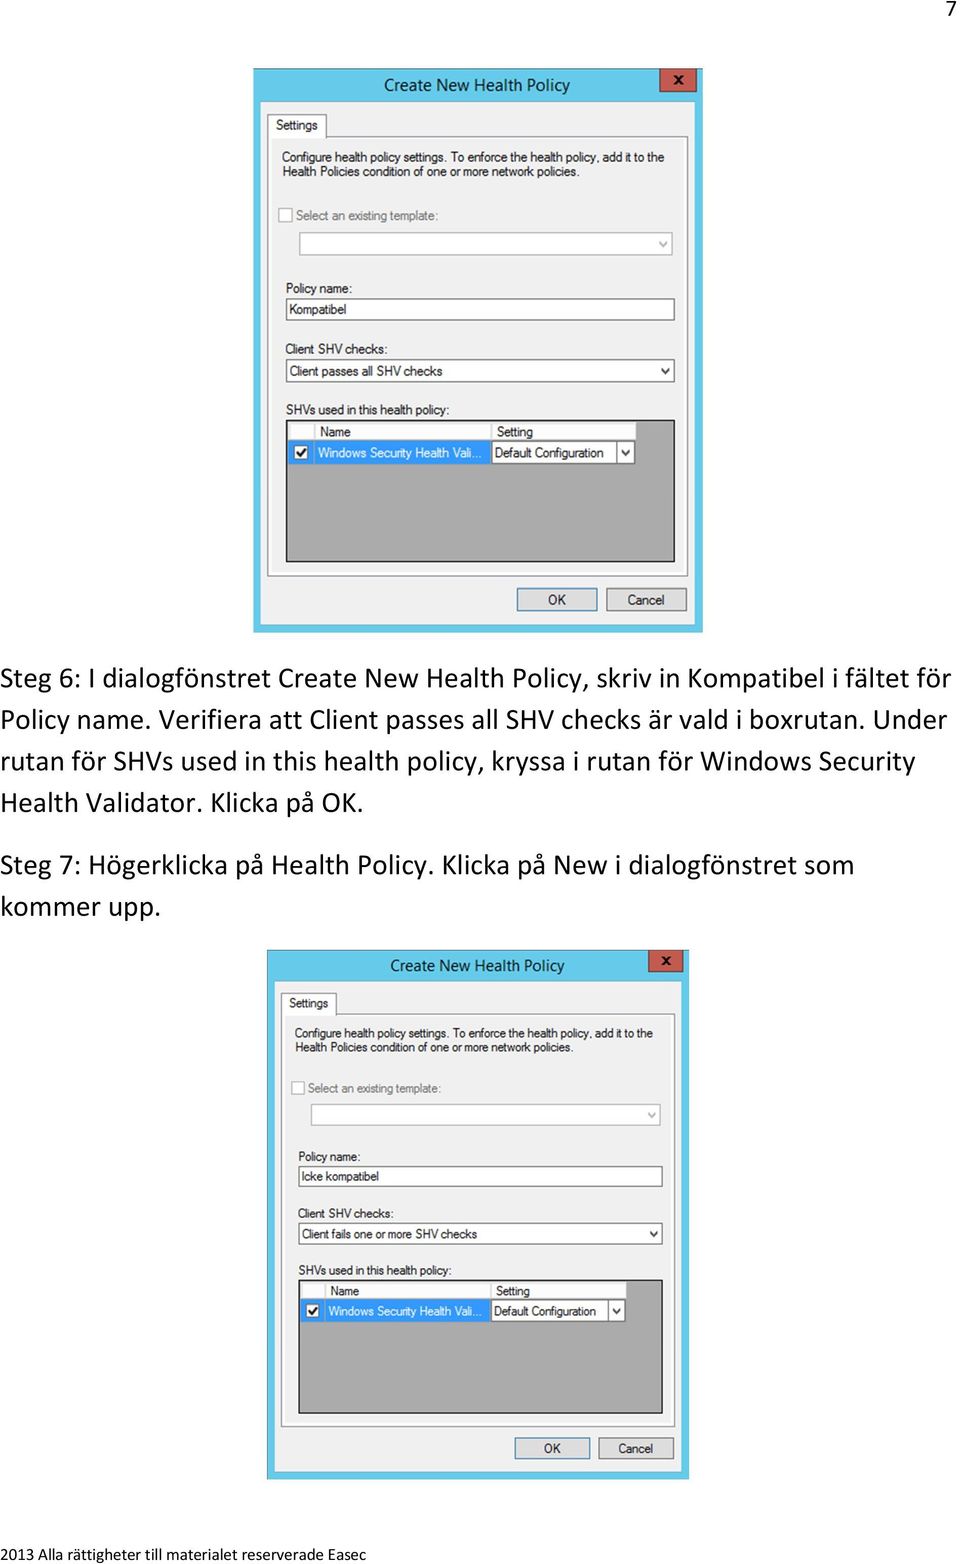 Under rutan för SHVs used in this health policy, kryssa i rutan för Windows Security